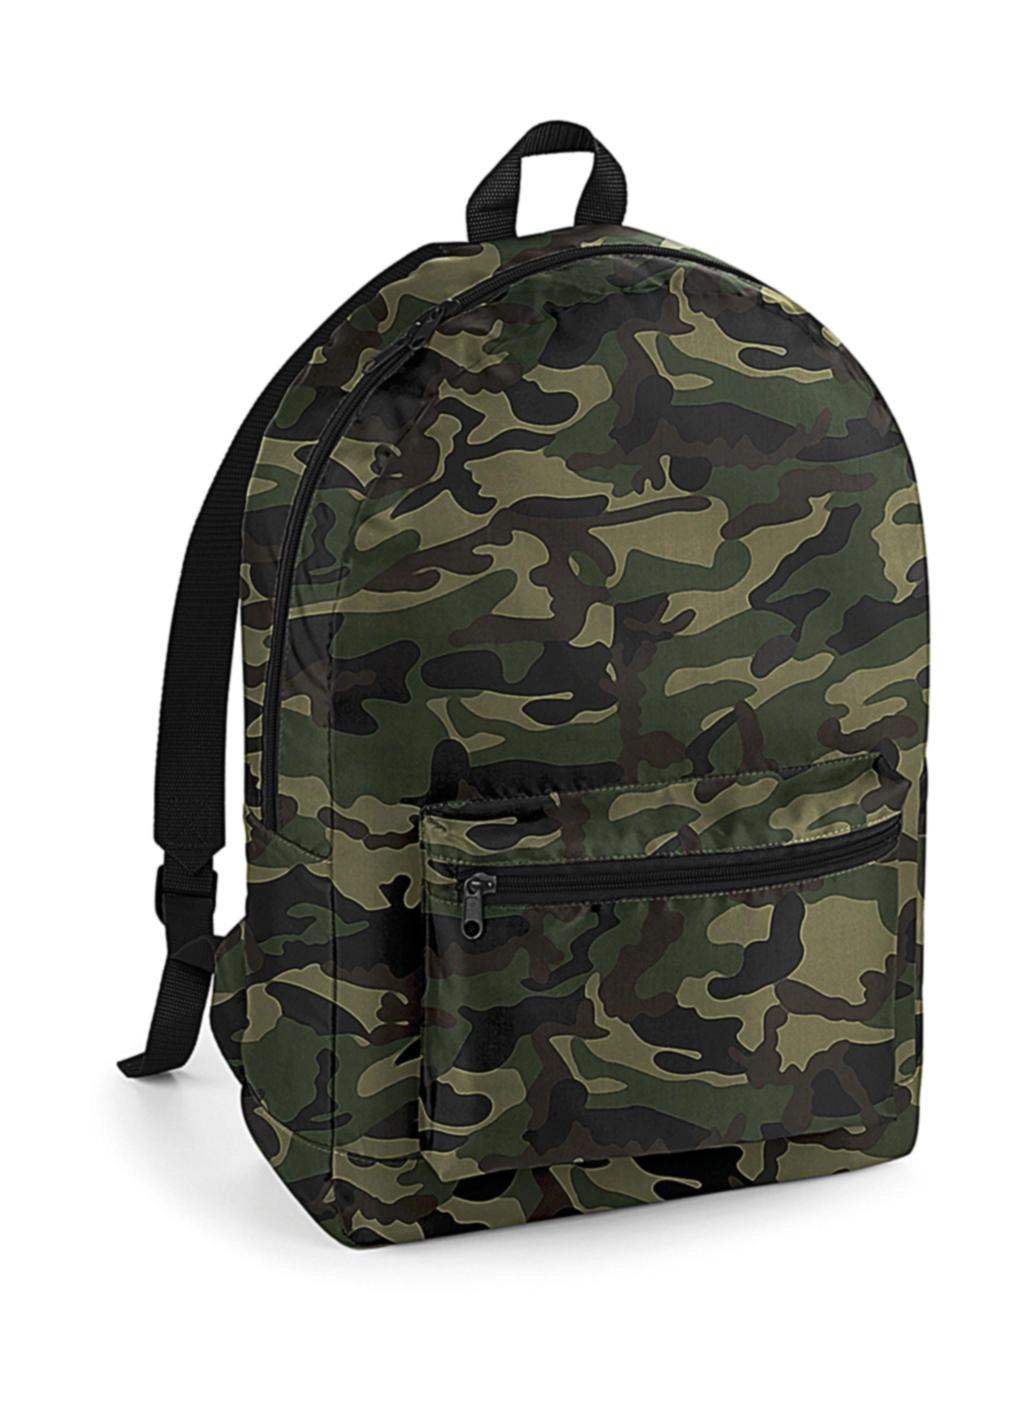 Packaway Backpack zum Besticken und Bedrucken in der Farbe Jungle Camo/Black mit Ihren Logo, Schriftzug oder Motiv.